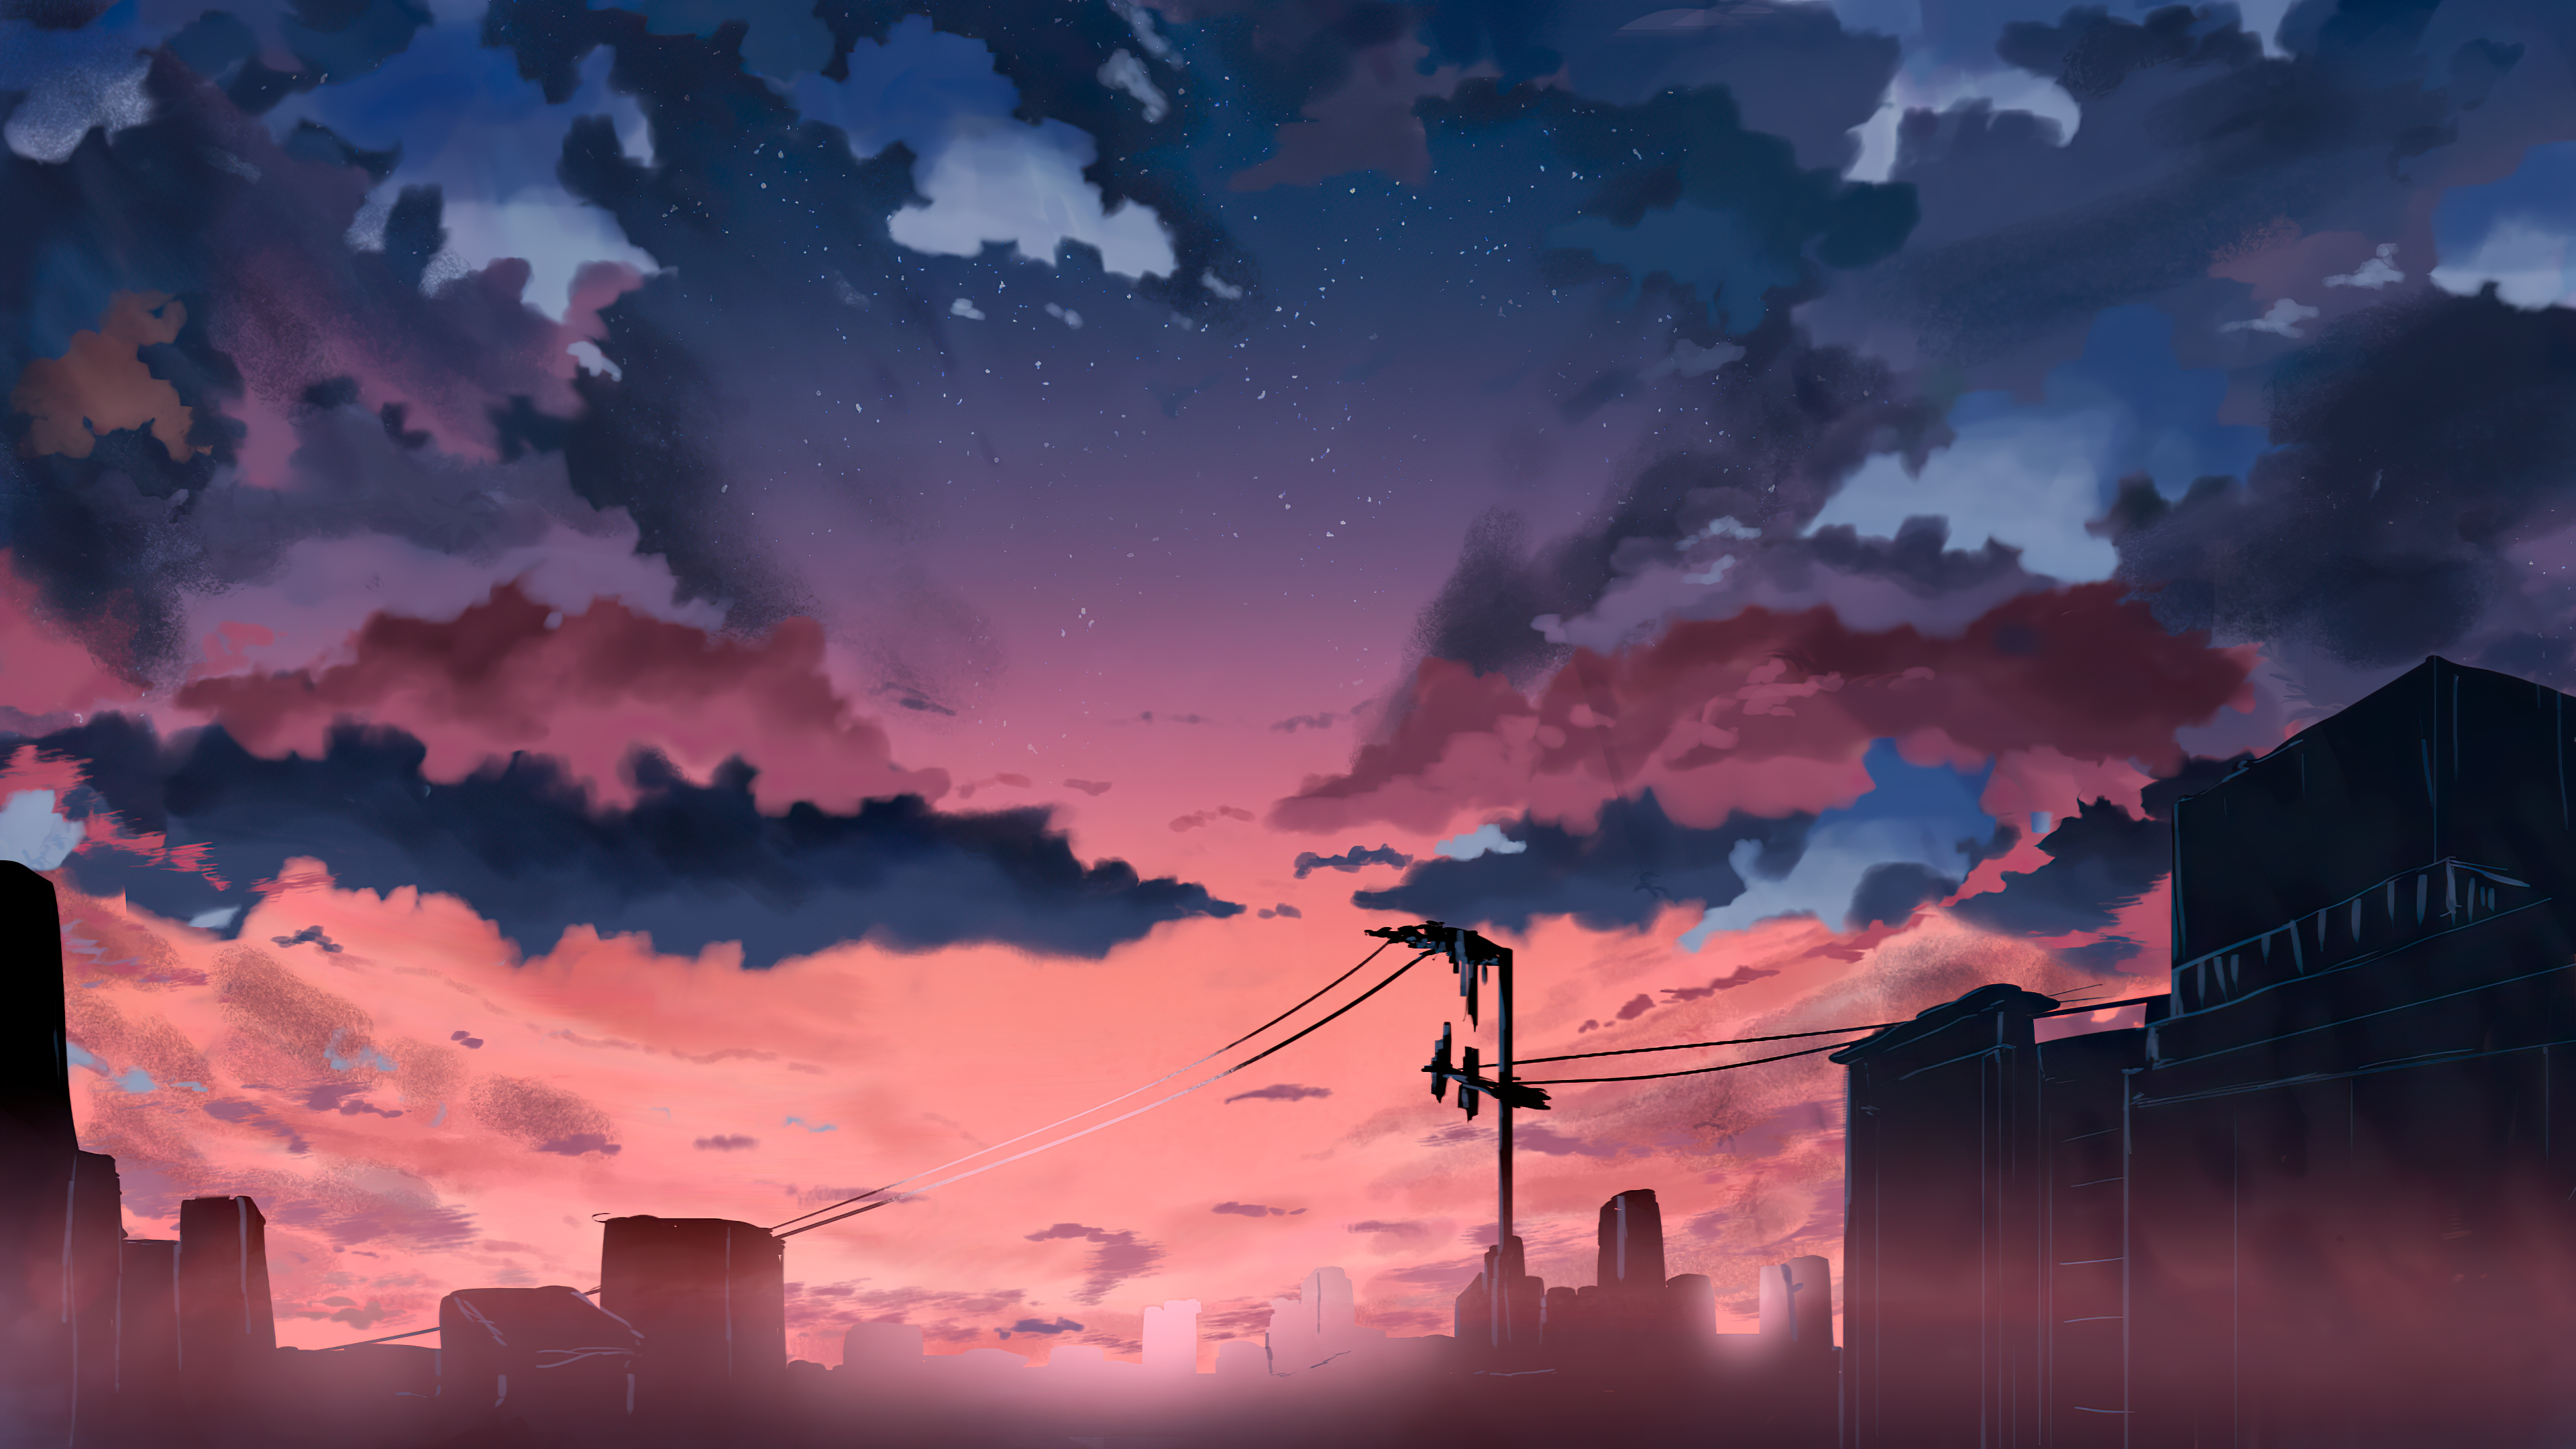 Anime Sky 4k Ultra HD Wallpaper By